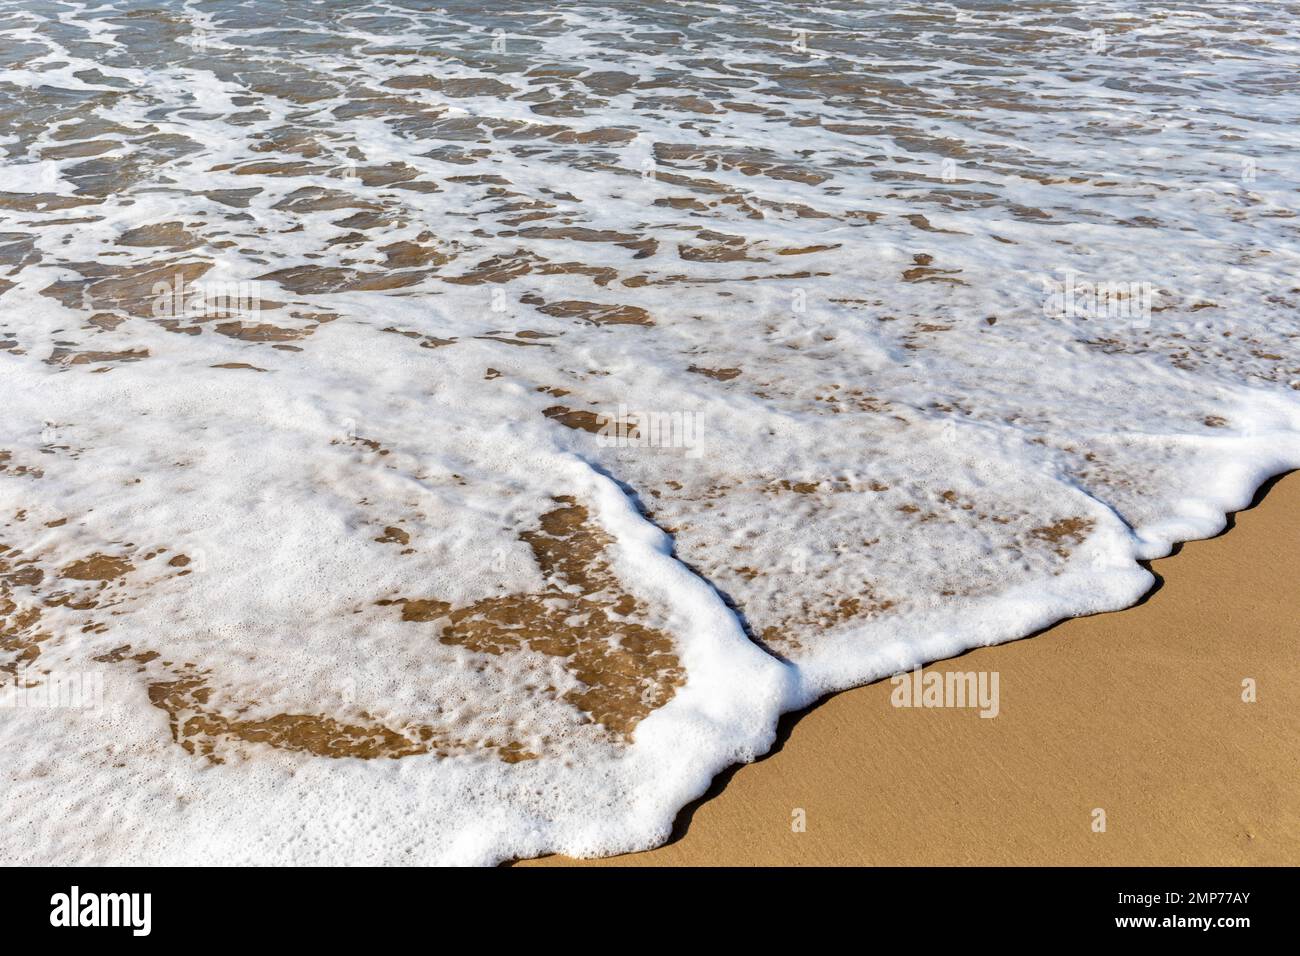 Vagues mousseuse se brisant doucement sur une plage de sable de près. Bournemouth, Dorset, Angleterre Banque D'Images